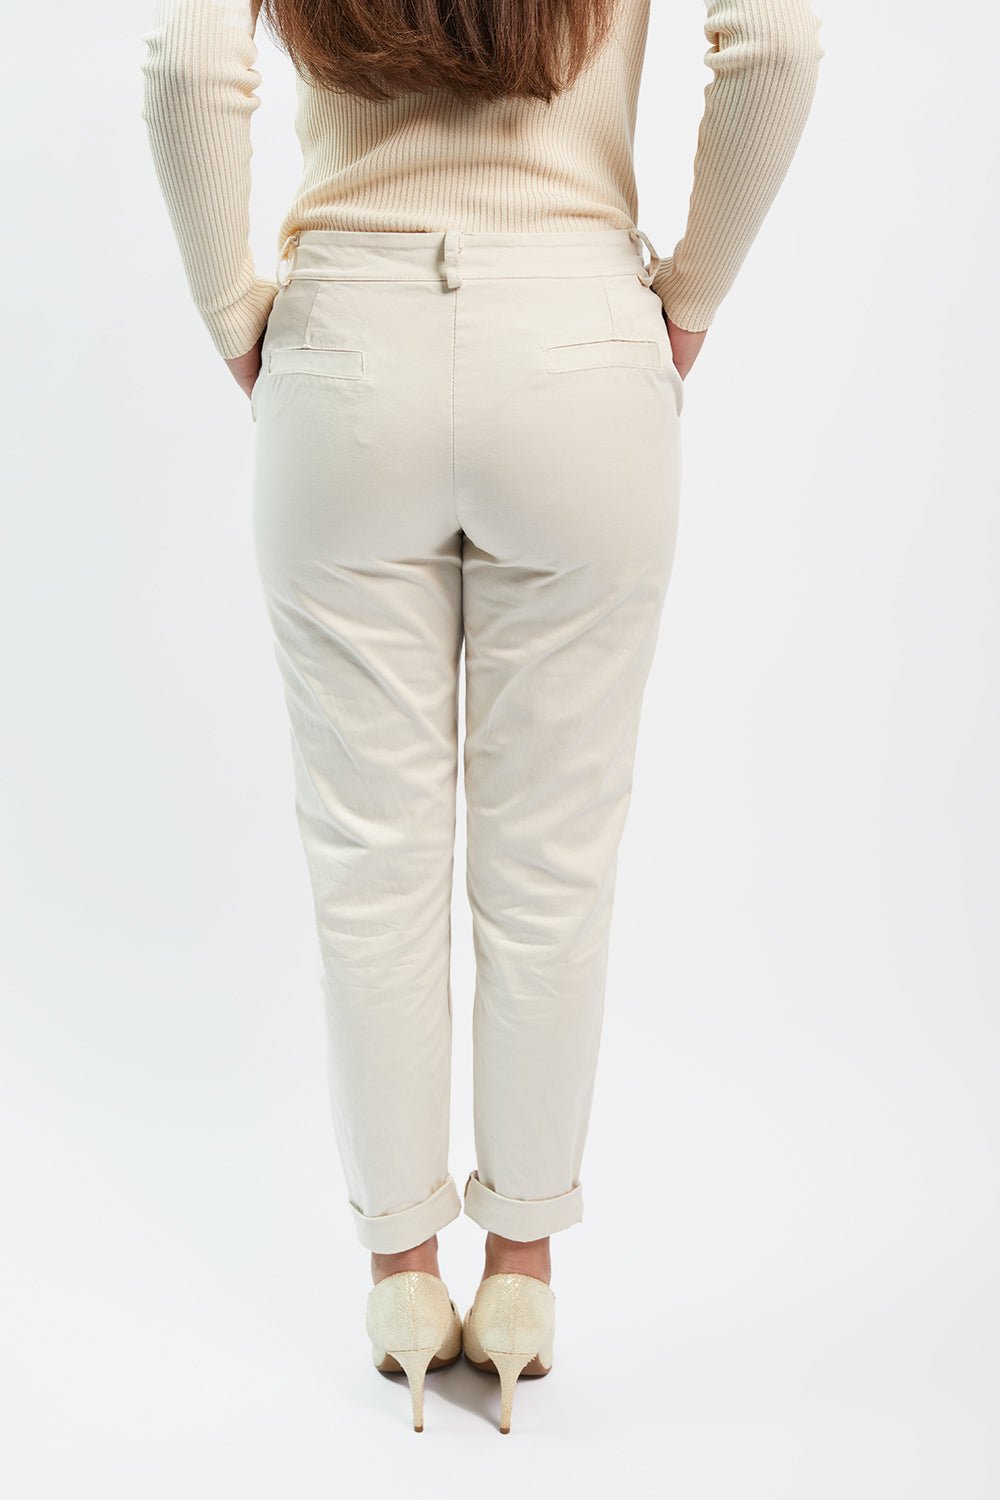 Pantaloni XM10245 - Adele Altman